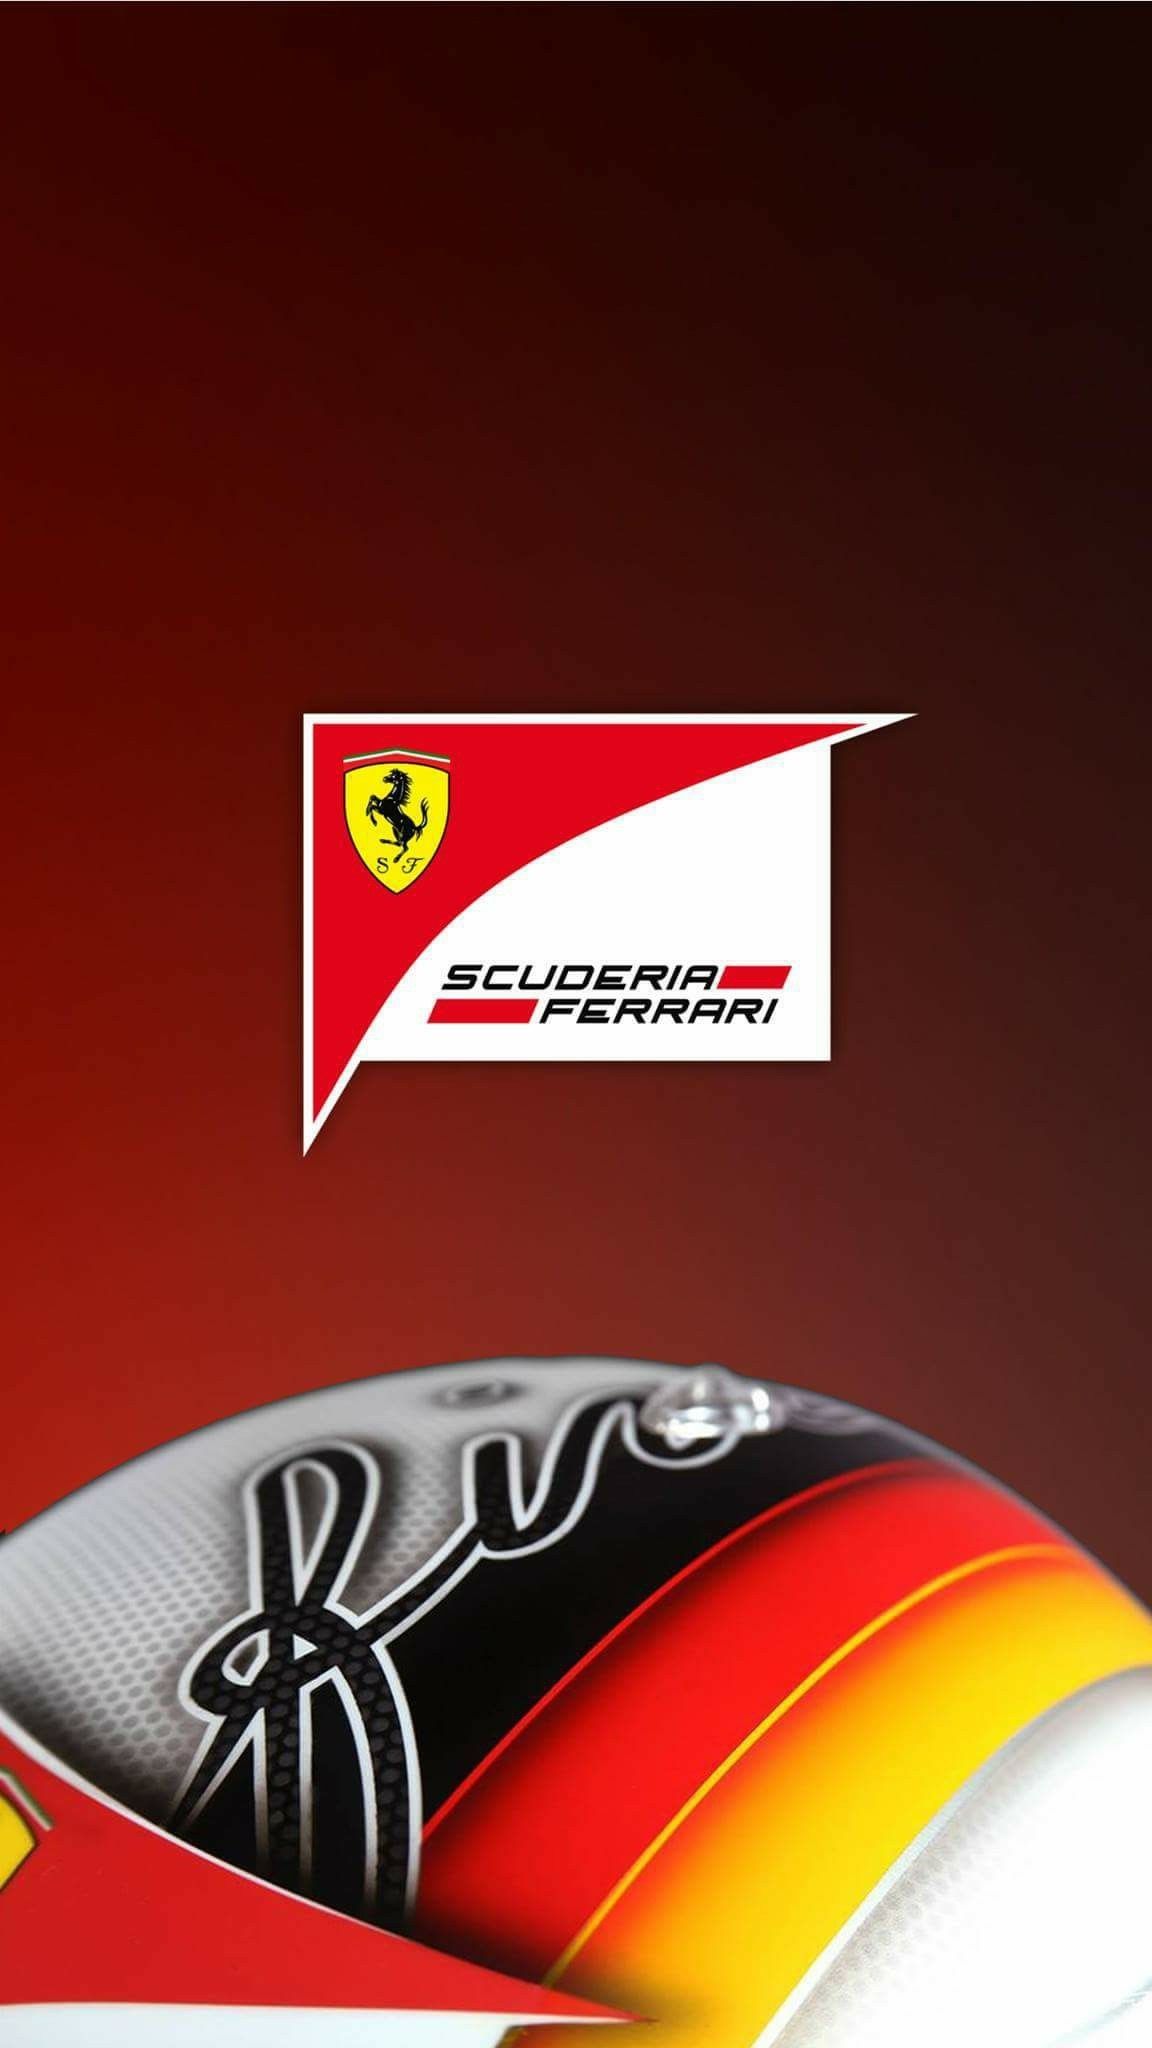 Scuderia Ferrari Phone Wallpaper Telefon Hintergrundbilder